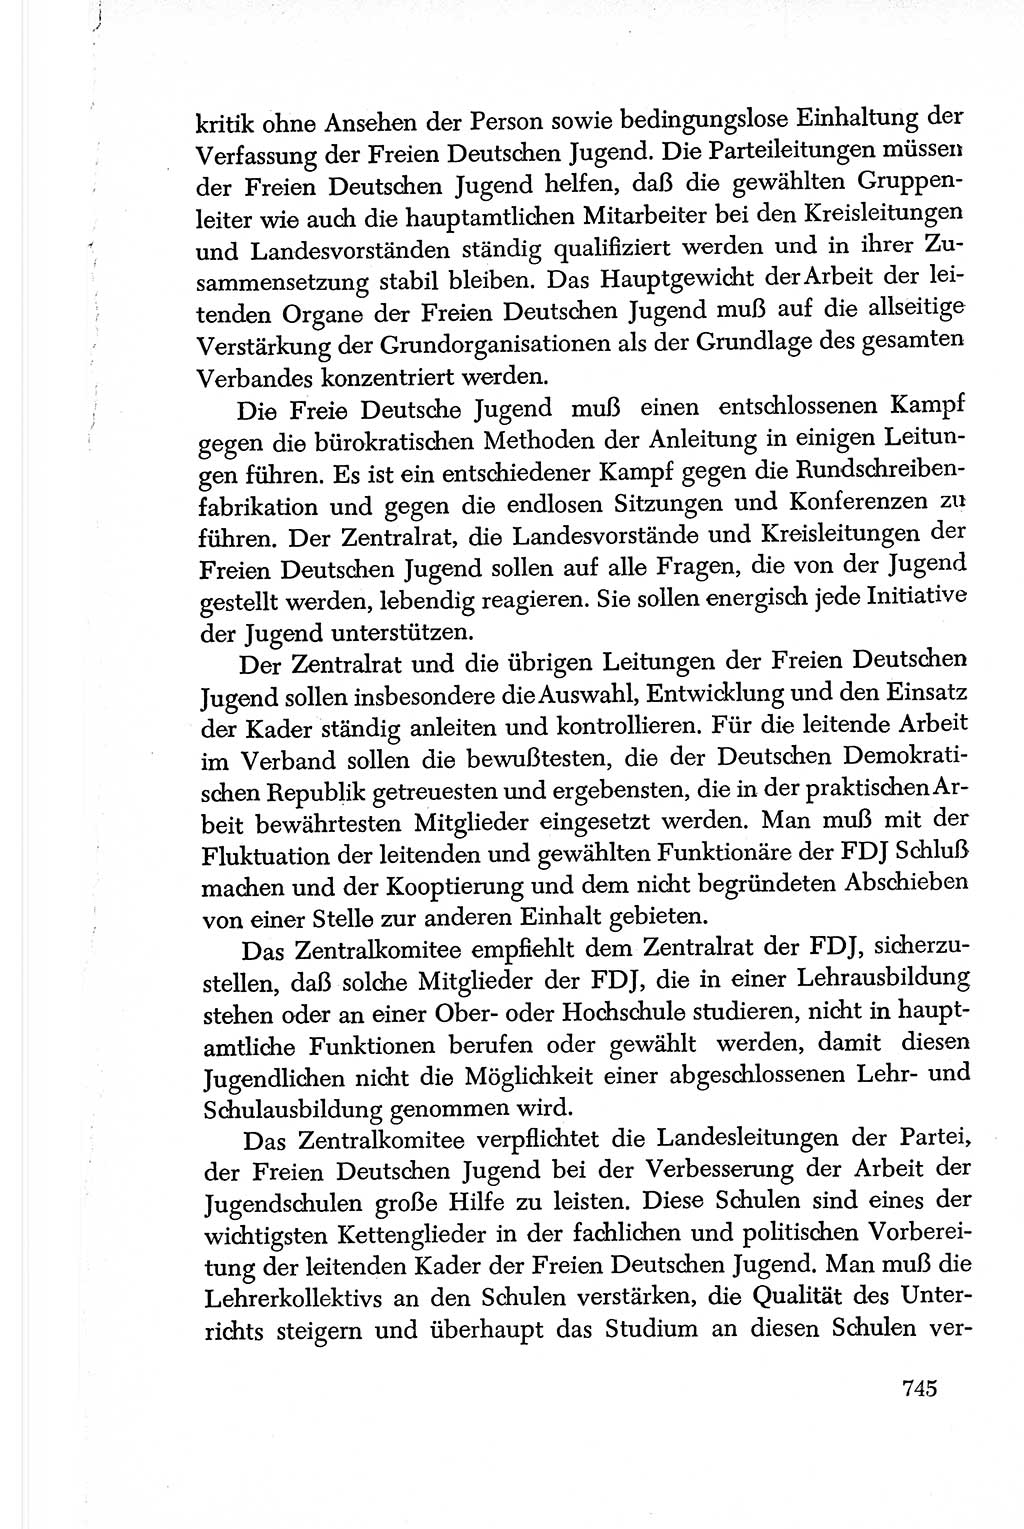 Dokumente der Sozialistischen Einheitspartei Deutschlands (SED) [Deutsche Demokratische Republik (DDR)] 1950-1952, Seite 745 (Dok. SED DDR 1950-1952, S. 745)